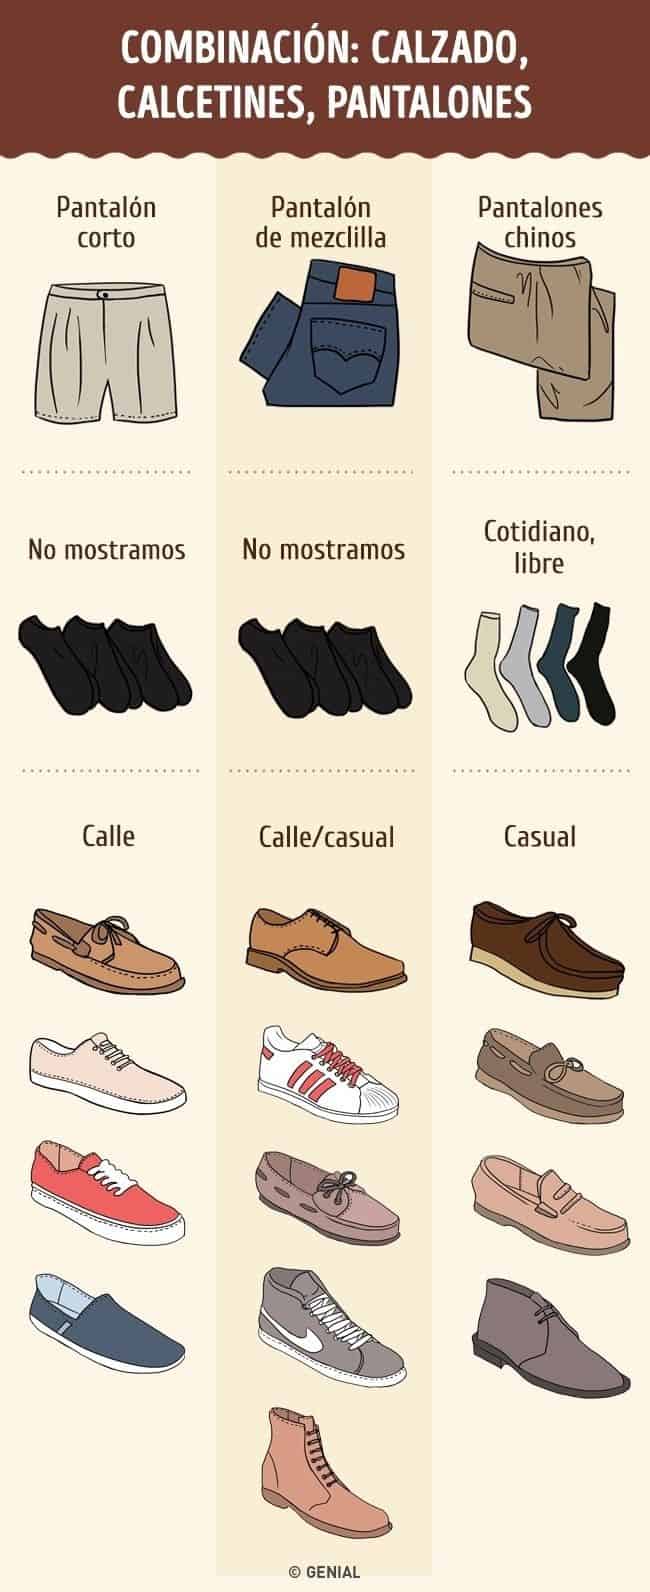 Mocasines con calcetines: tipos y qué color usar